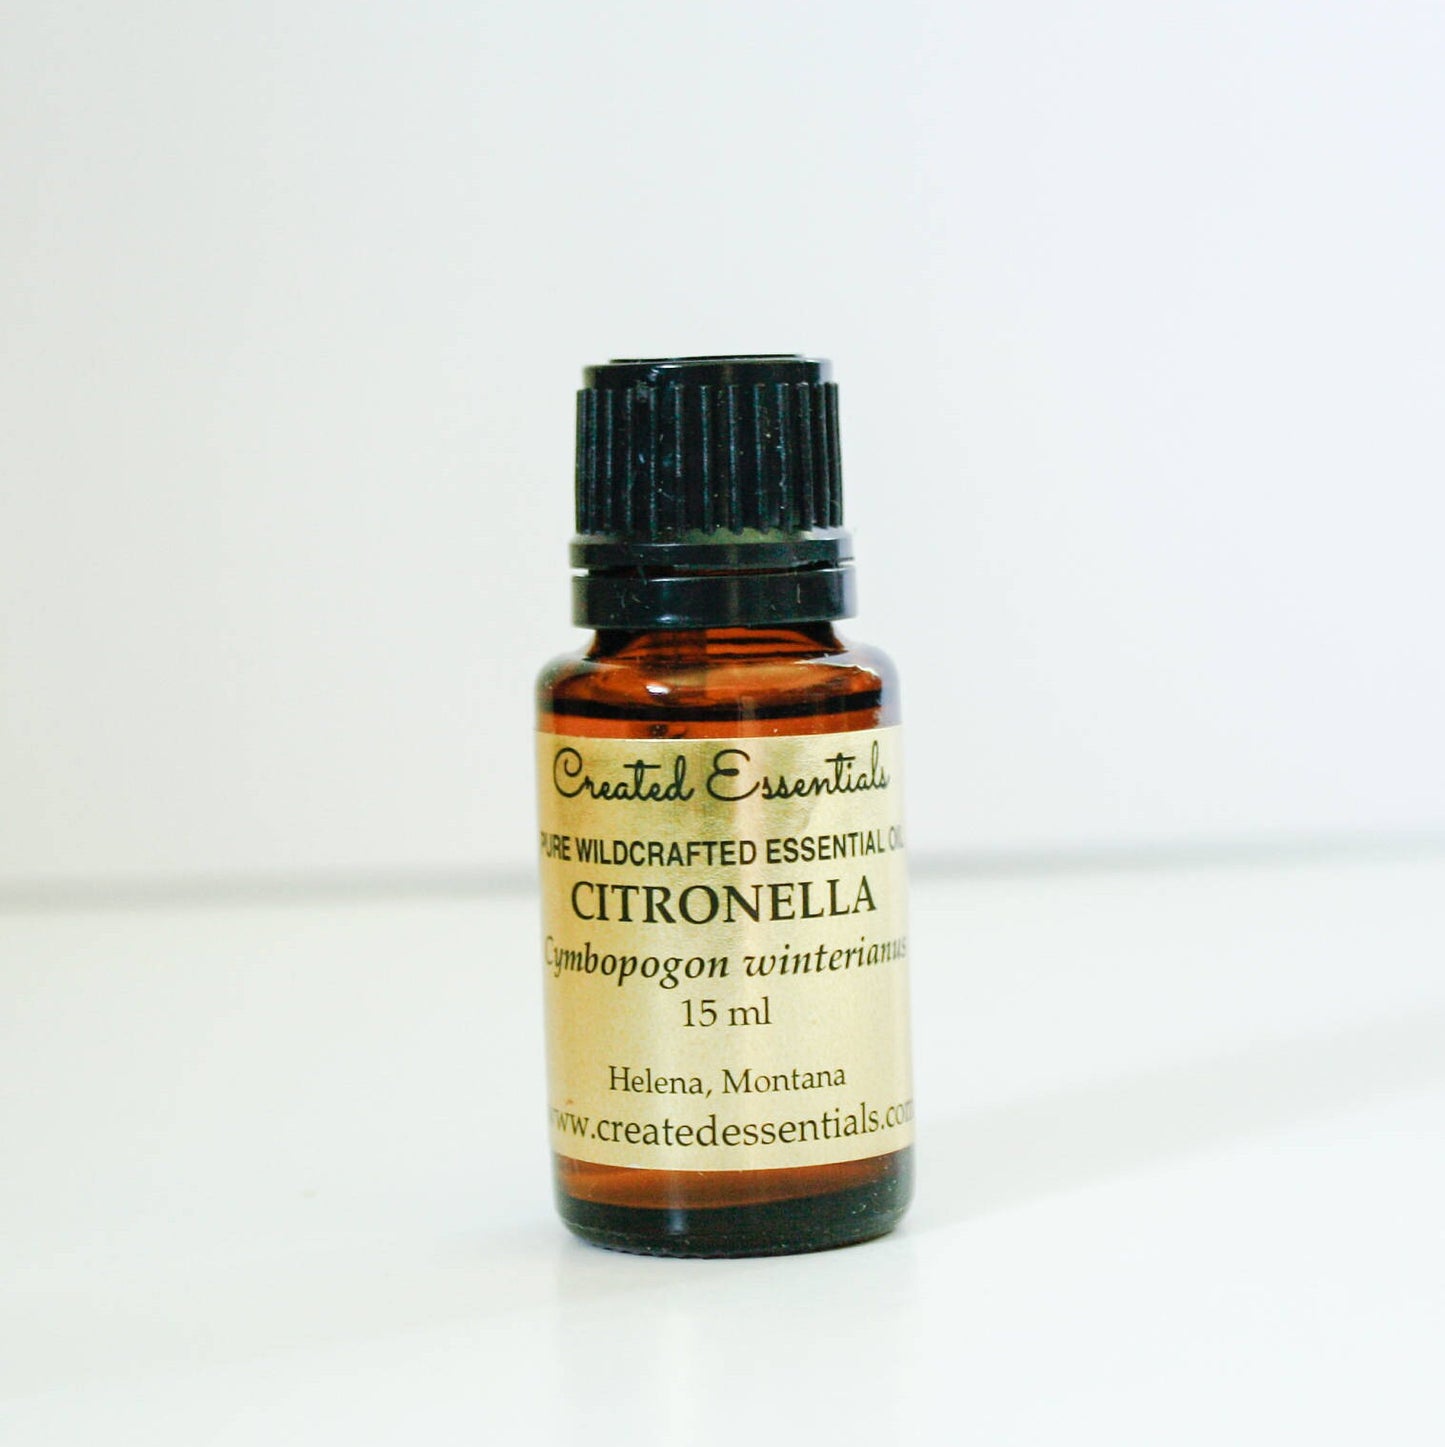 Citronella Essential Oil | Wildcrafted Citronella Oil | 100% Pure Essential Oil | Therapeutic Essential Oil of Citronella